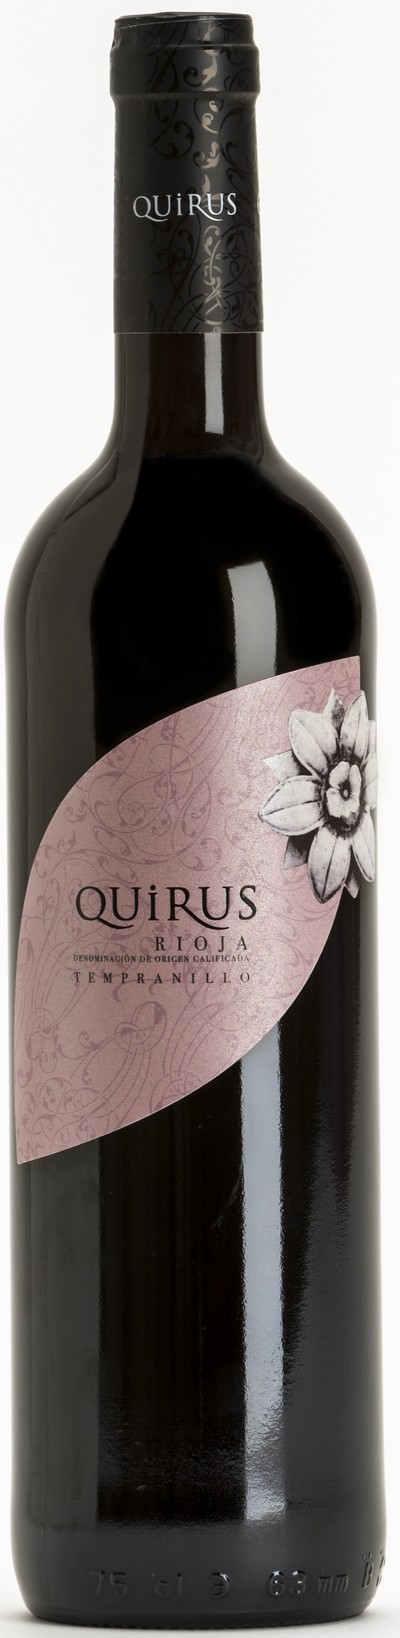 quirus-tempranillo-4mb-2015